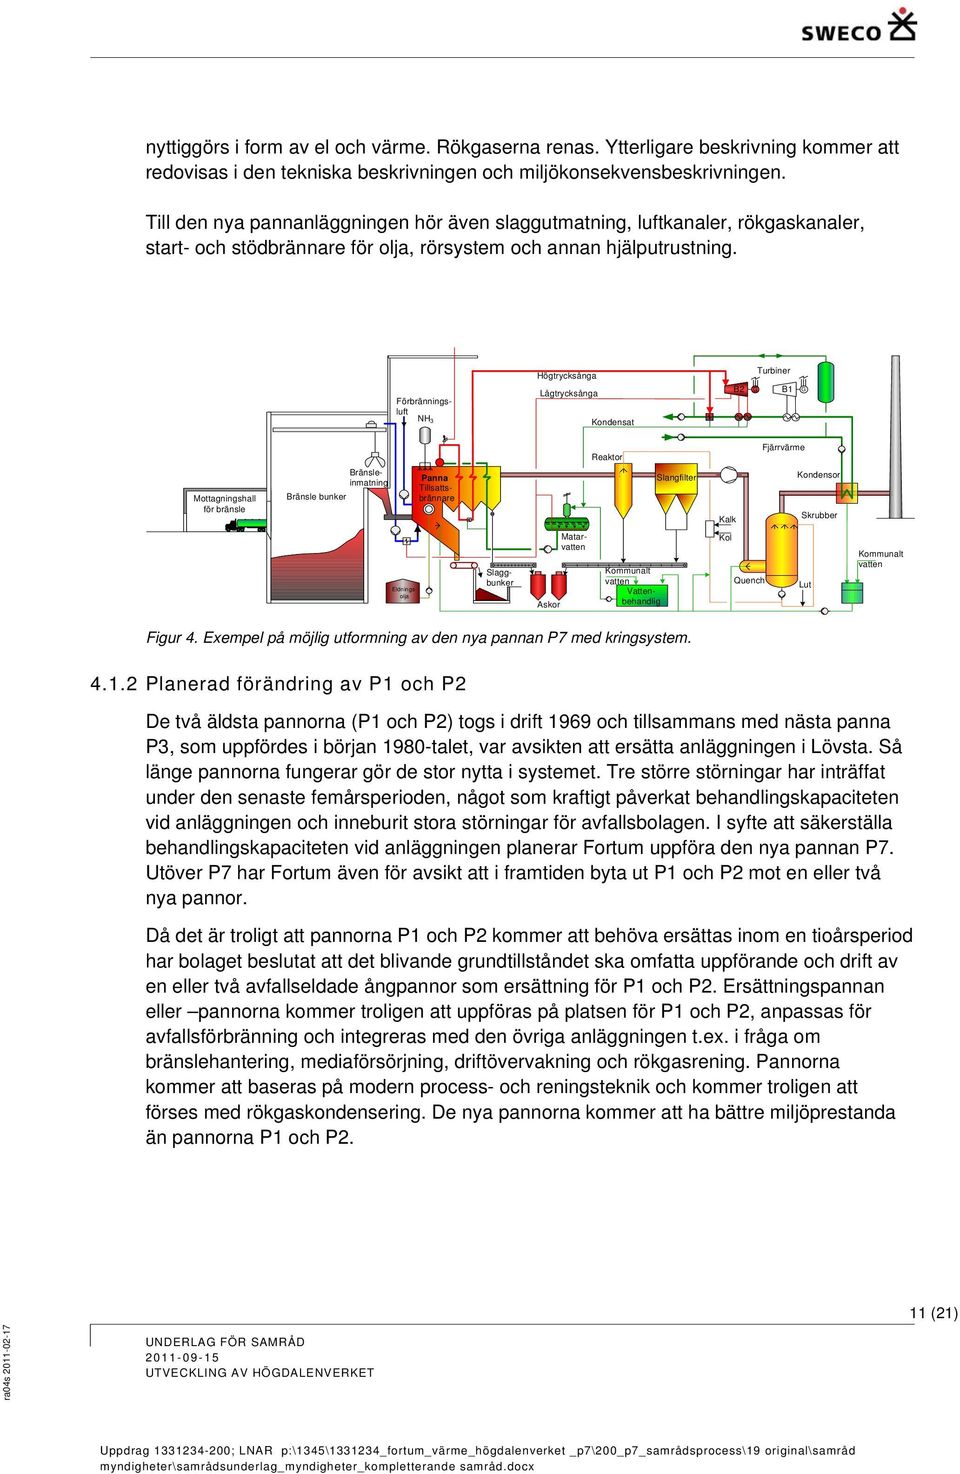 Högtrycksånga Turbiner Förbränningsluft NH3 Lågtrycksånga Kondensat B2 G B1 G Reaktor Fjärrvärme Mottagningshall för bränsle Bränsleinmatning Bränsle bunker Panna Tillsattsbrännare Slangfilter Kalk